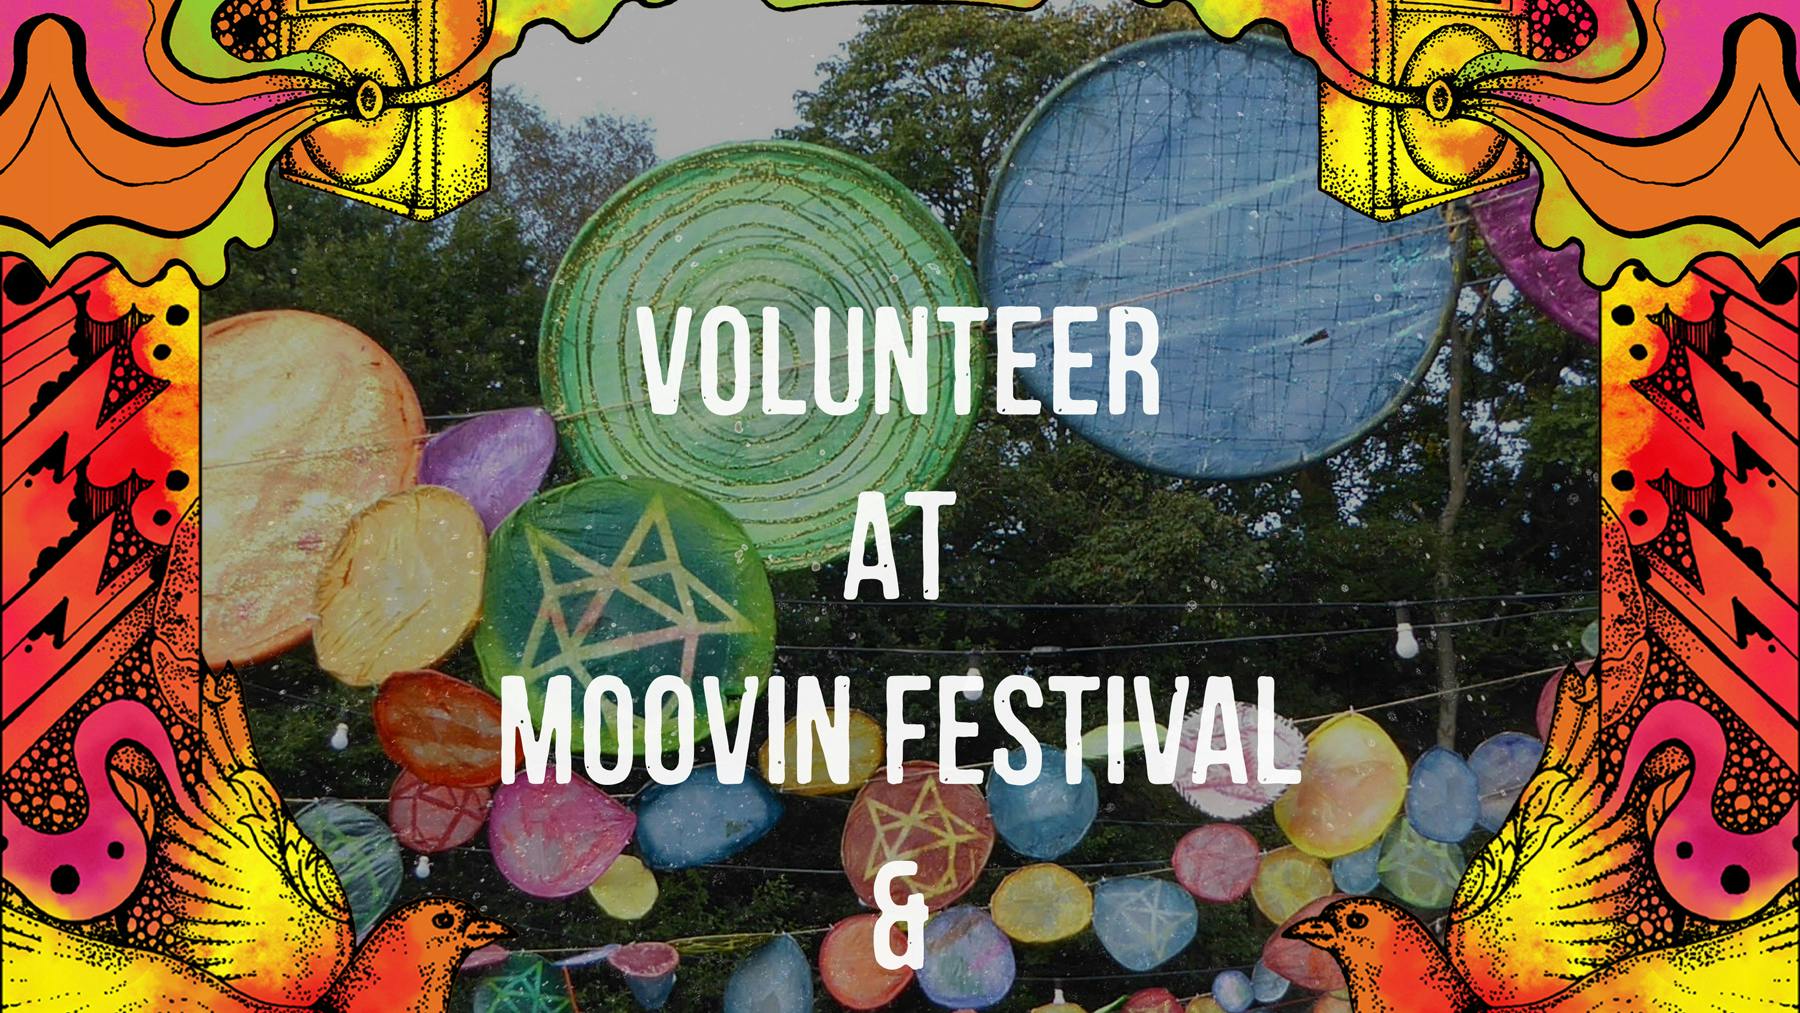 Volunteer at Moovin Barn Party & Moovin Festival 2022